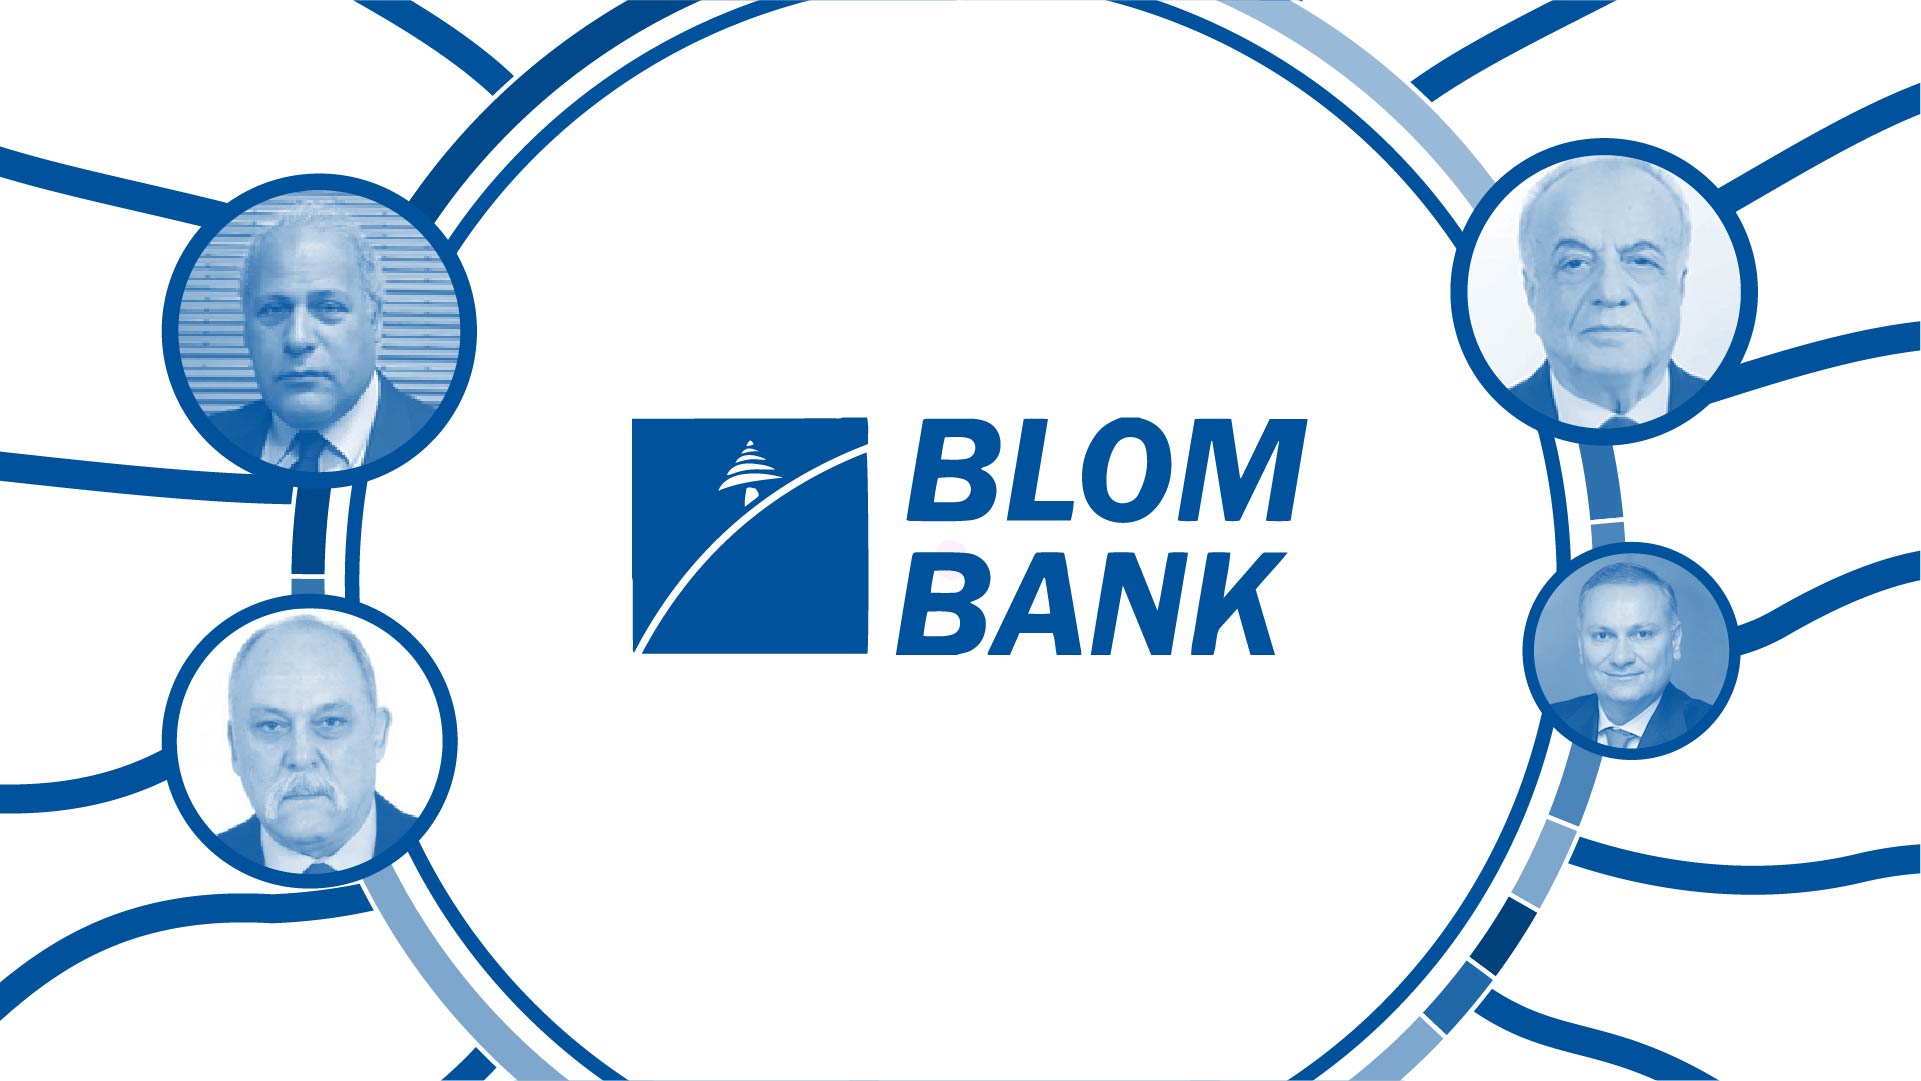 Blom Bank